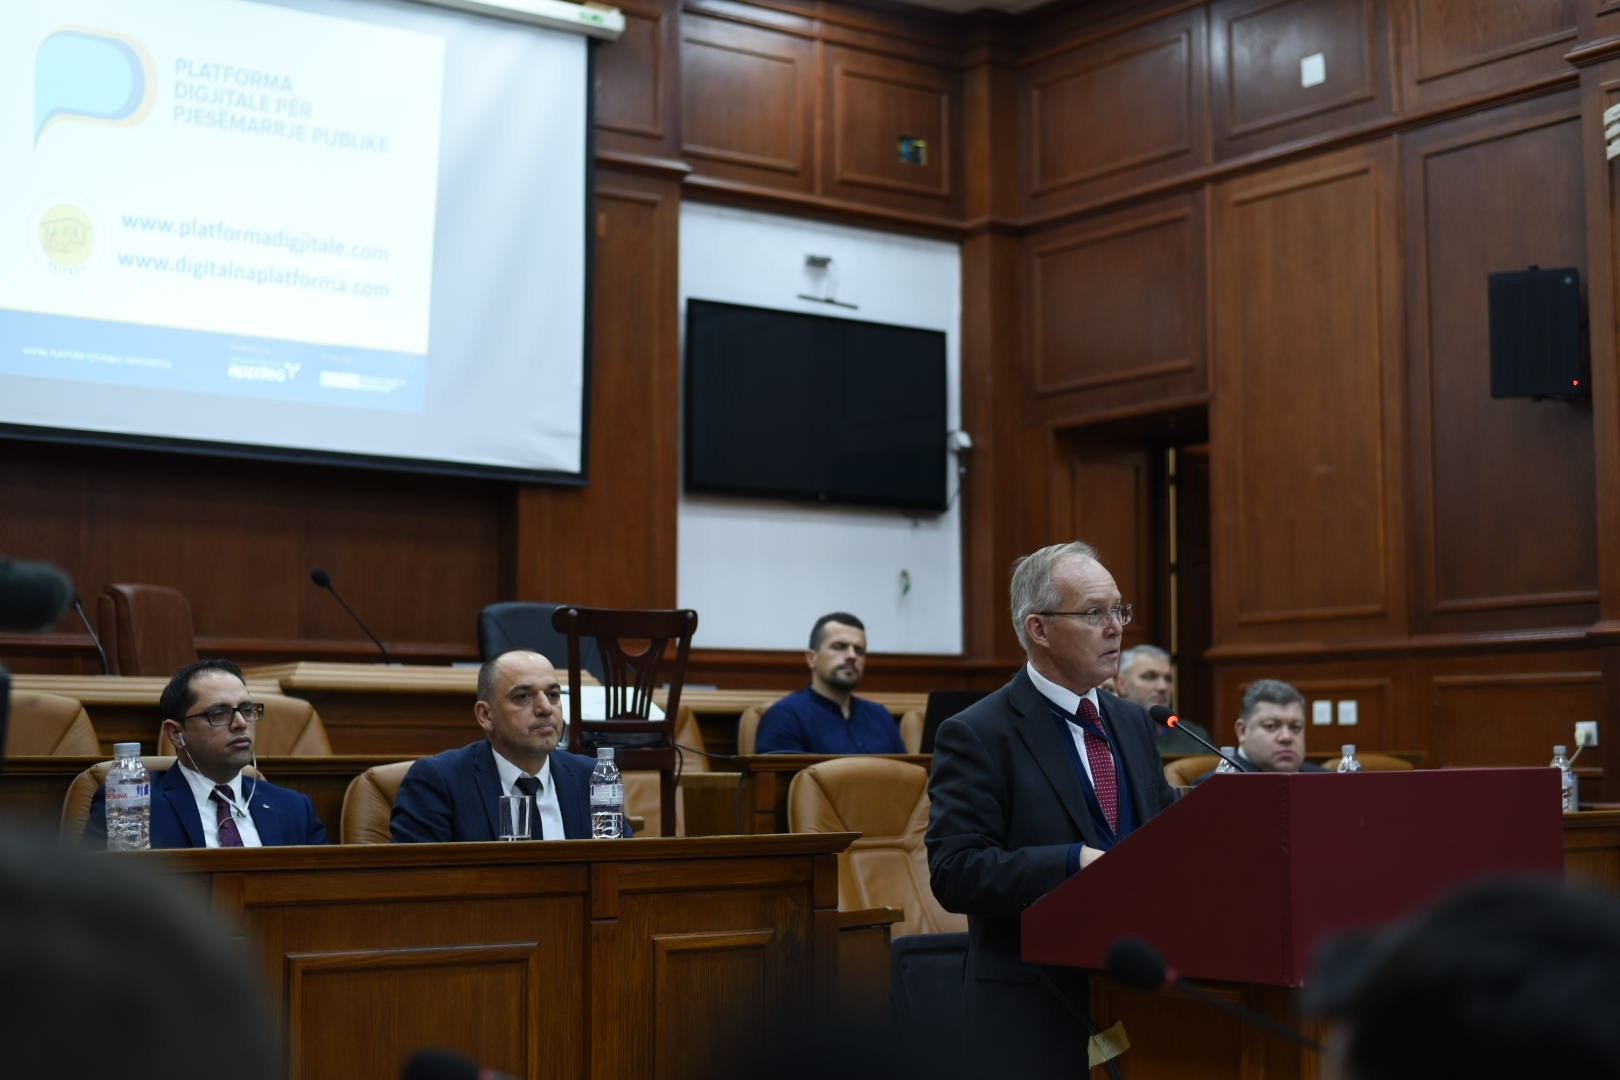 Lansohet platforma digjitale për pjesëmarrje të publikut në Komunën e Prizrenit